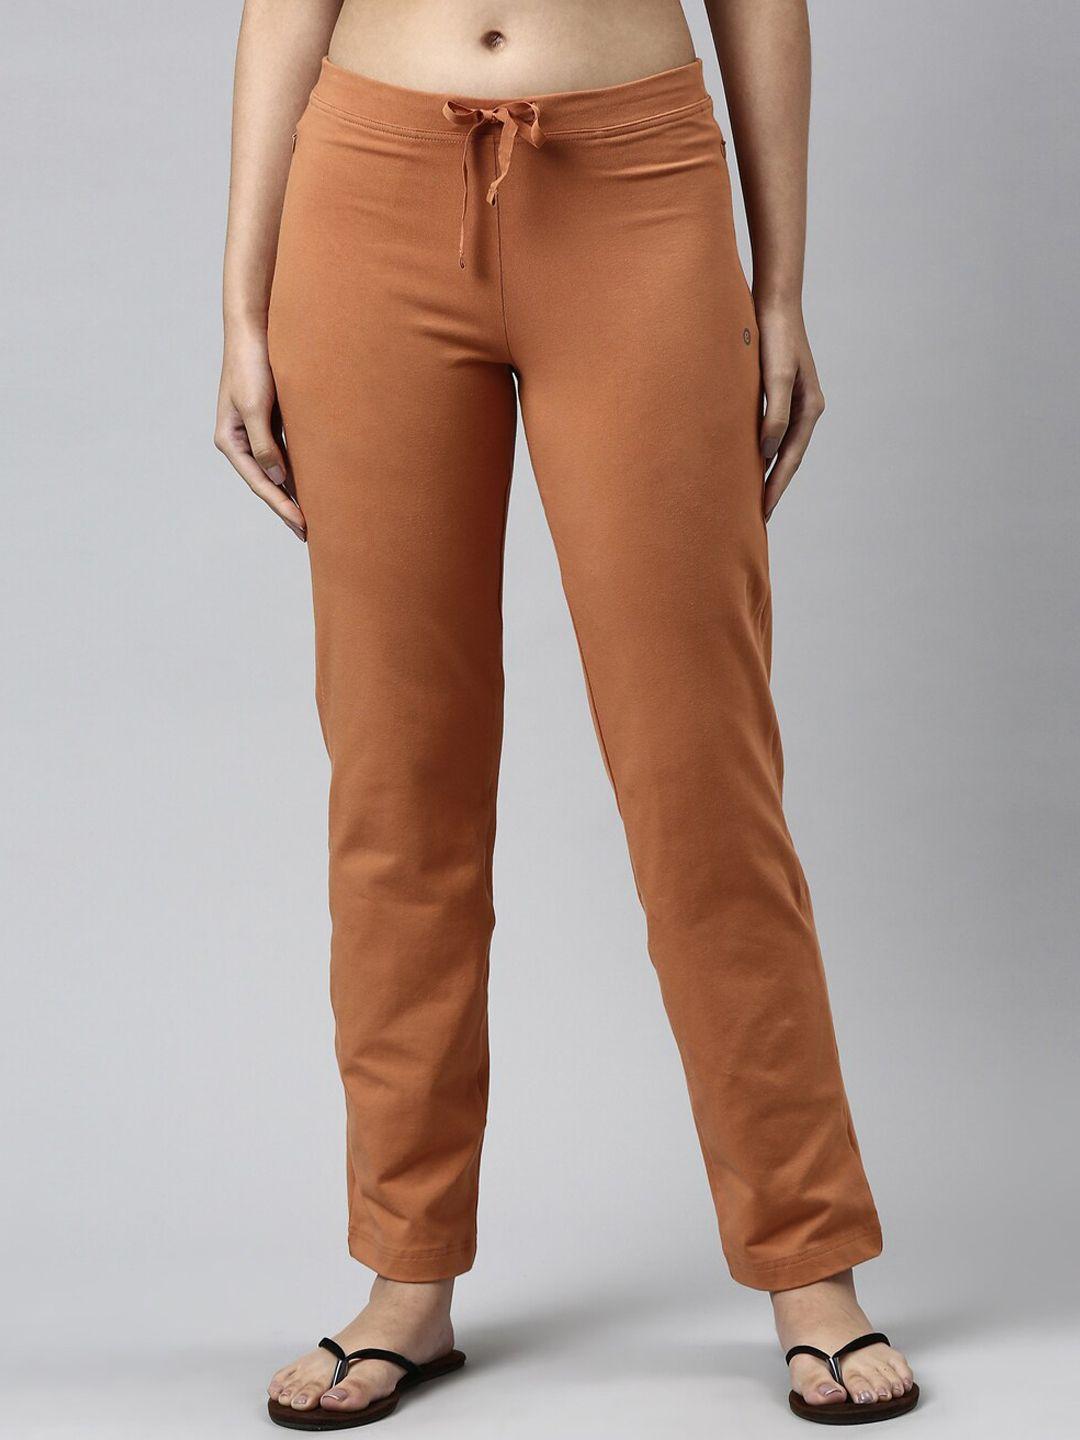 enamor women plus size orange solid cotton slim-fit lounge pants